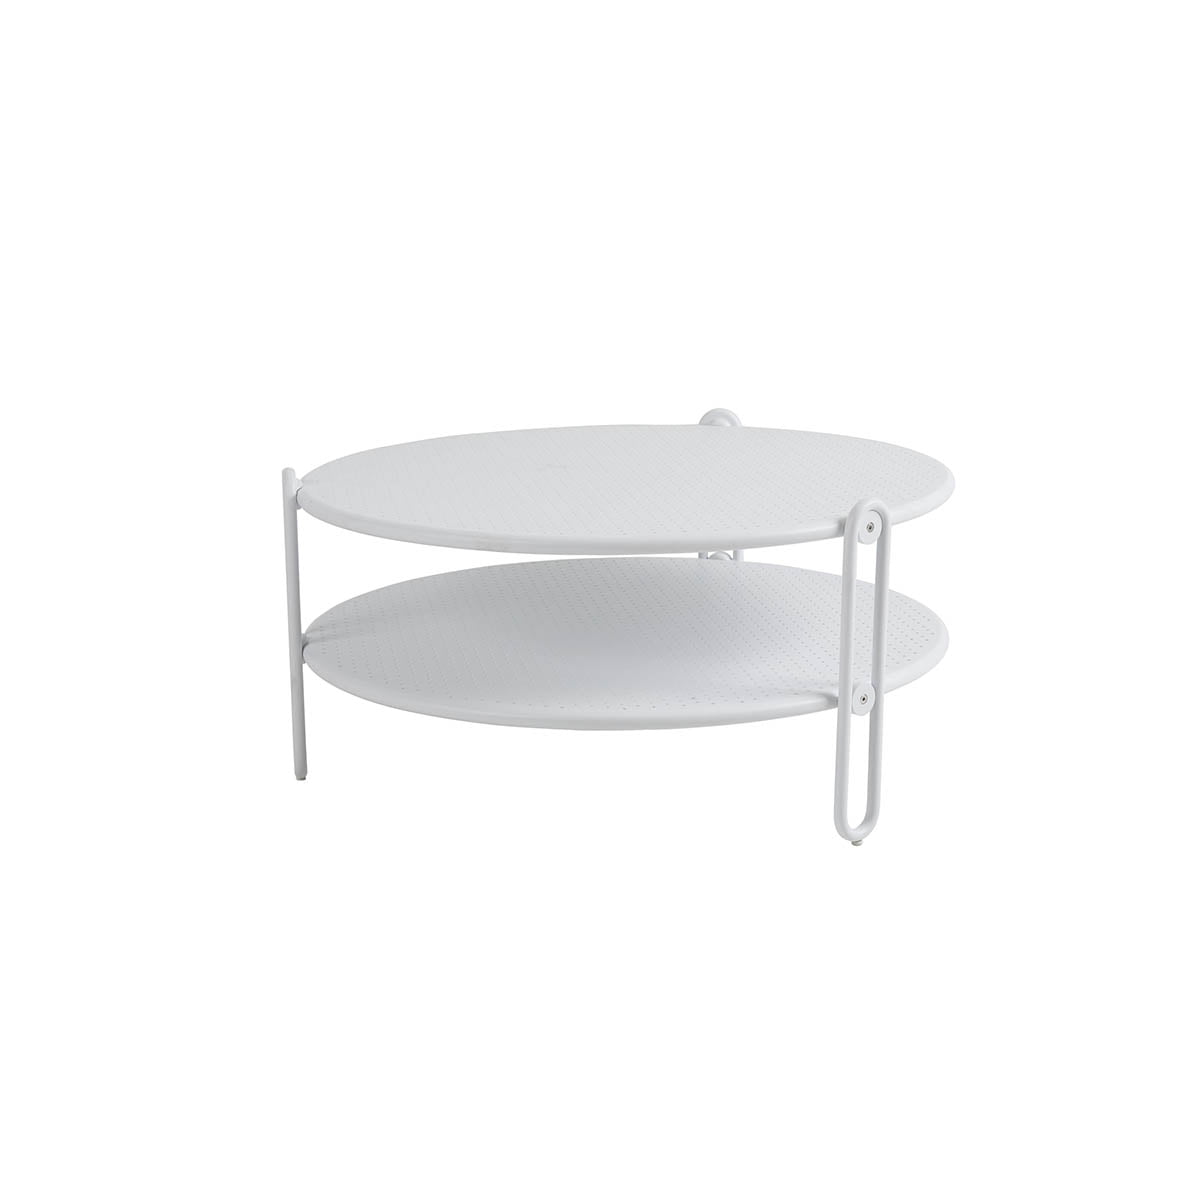 Blixt rundt bord i aluminium med diameter på 85 cm. Bordet har perforert bordplate, fine designdetaljer